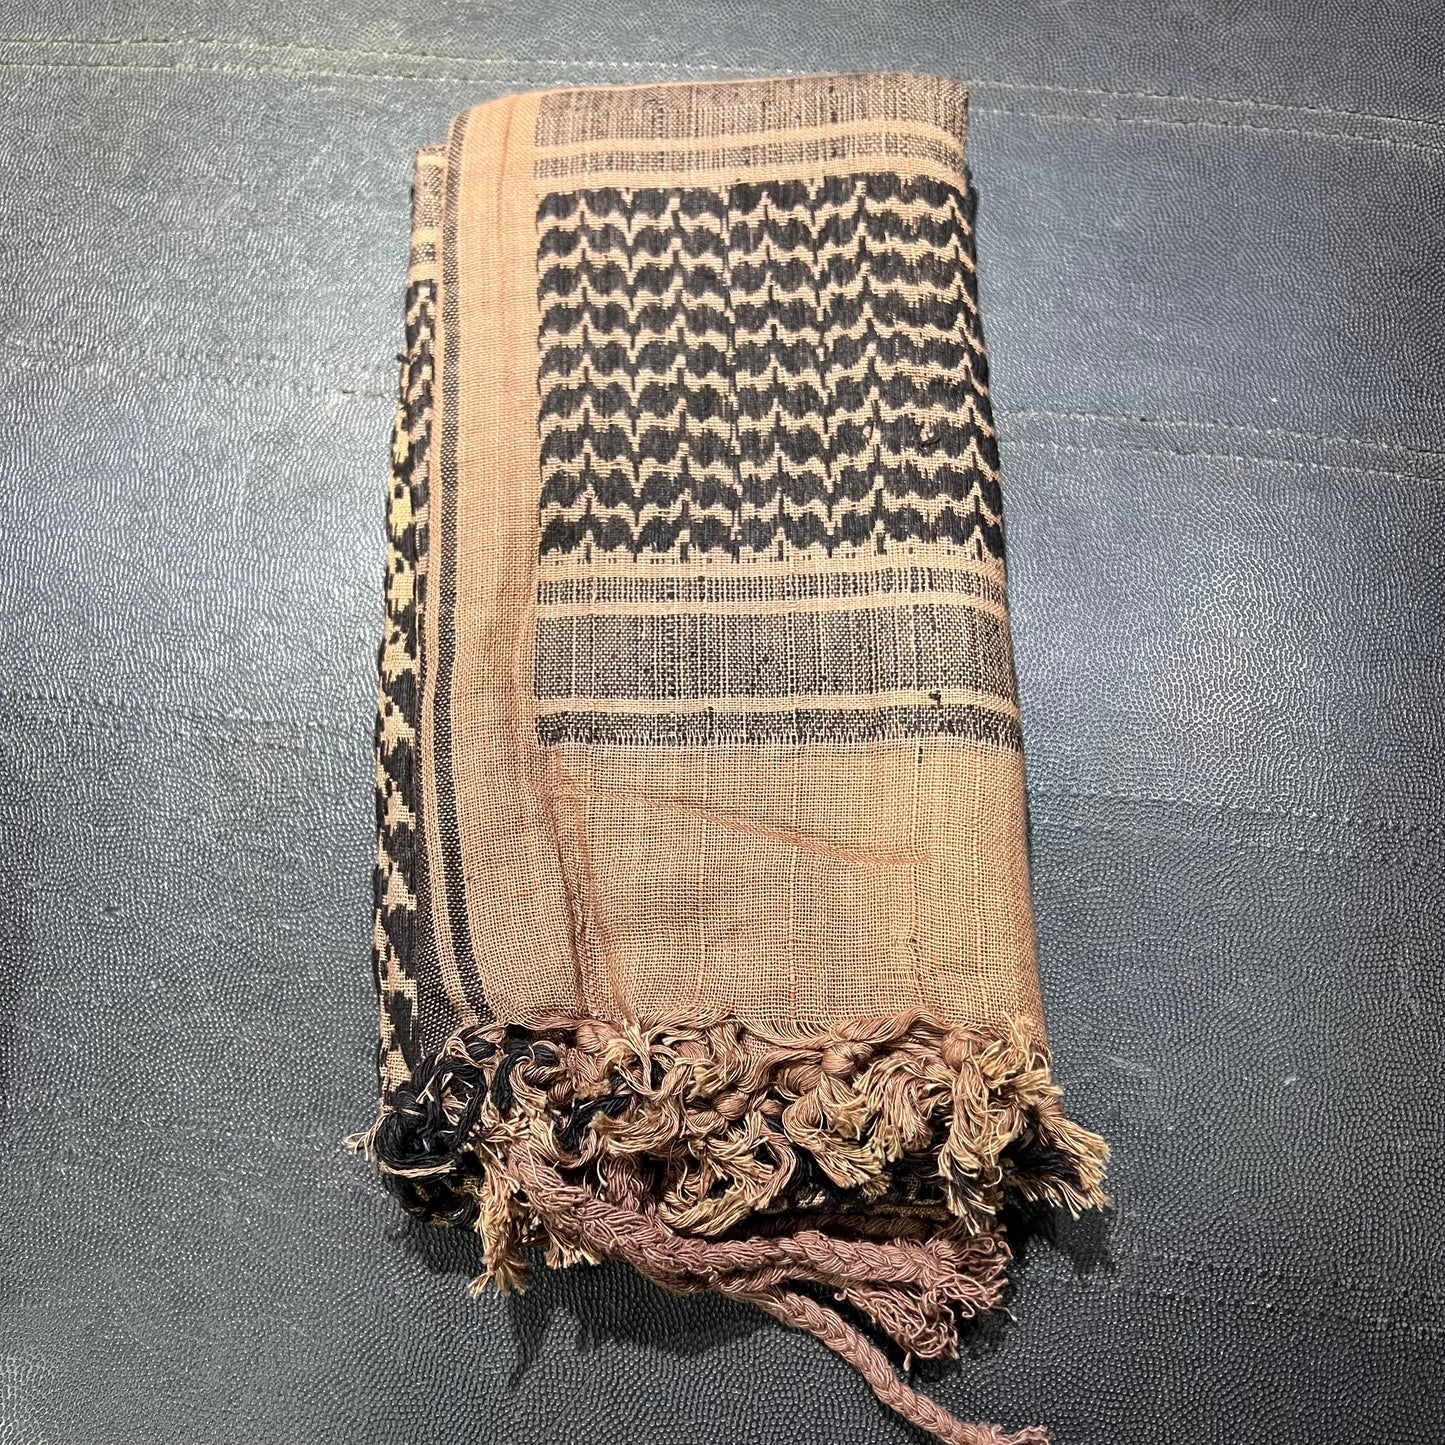 傳統沙漠圍巾/中東巾 Shemagh Desert Scarf